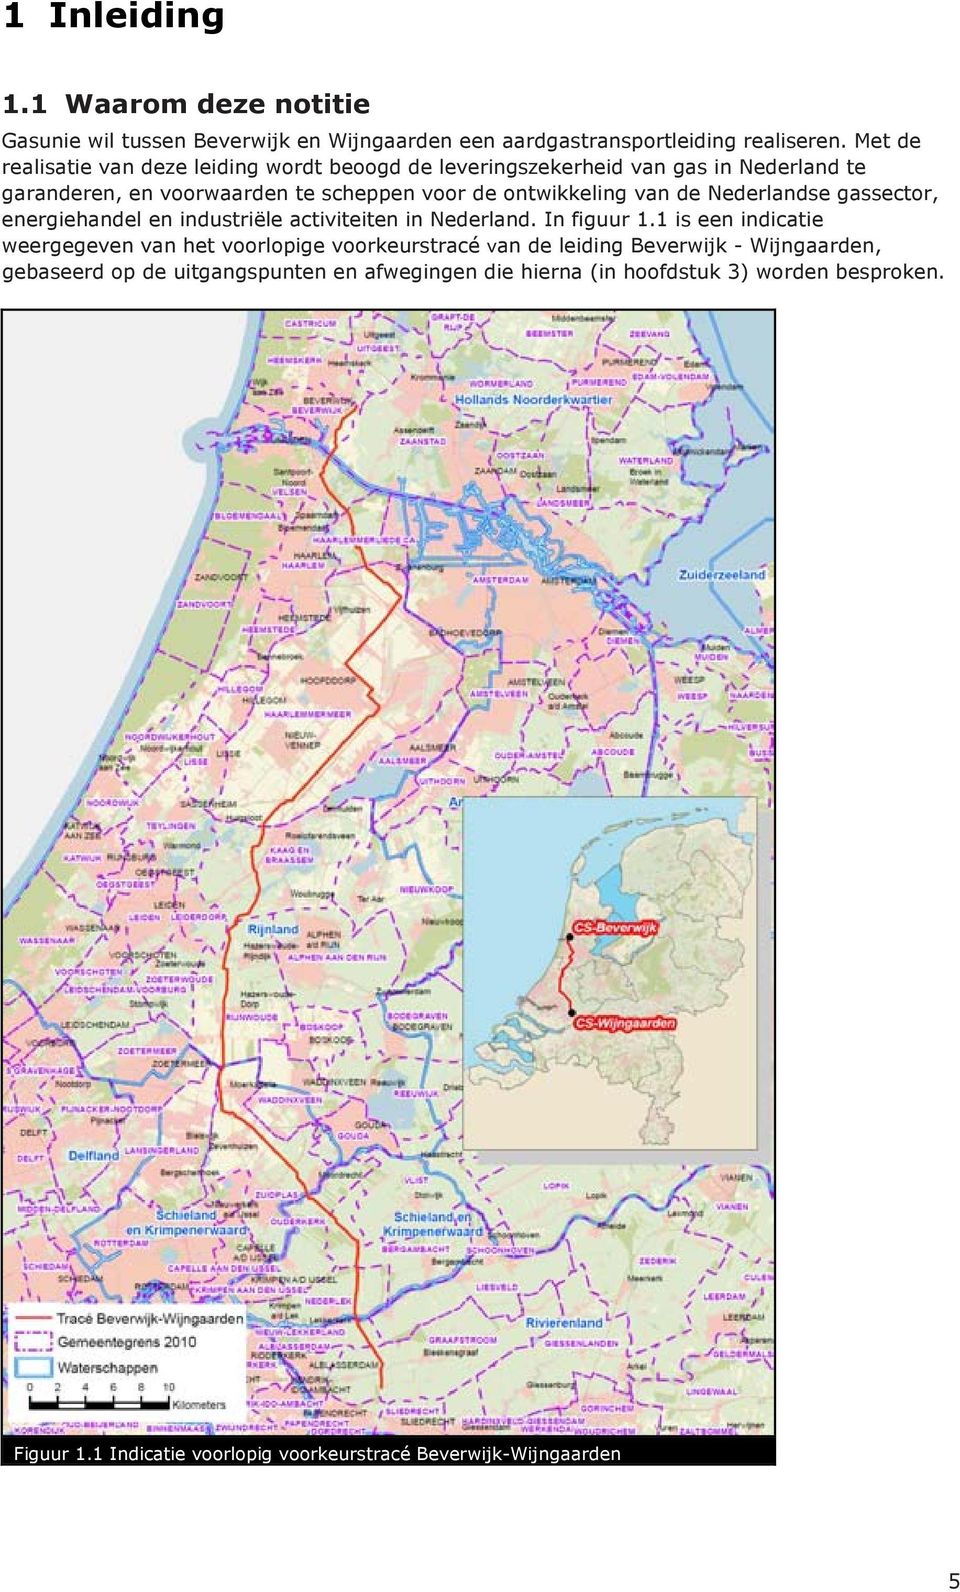 de Nederlandse gassector, energiehandel en industriële activiteiten in Nederland. In figuur 1.